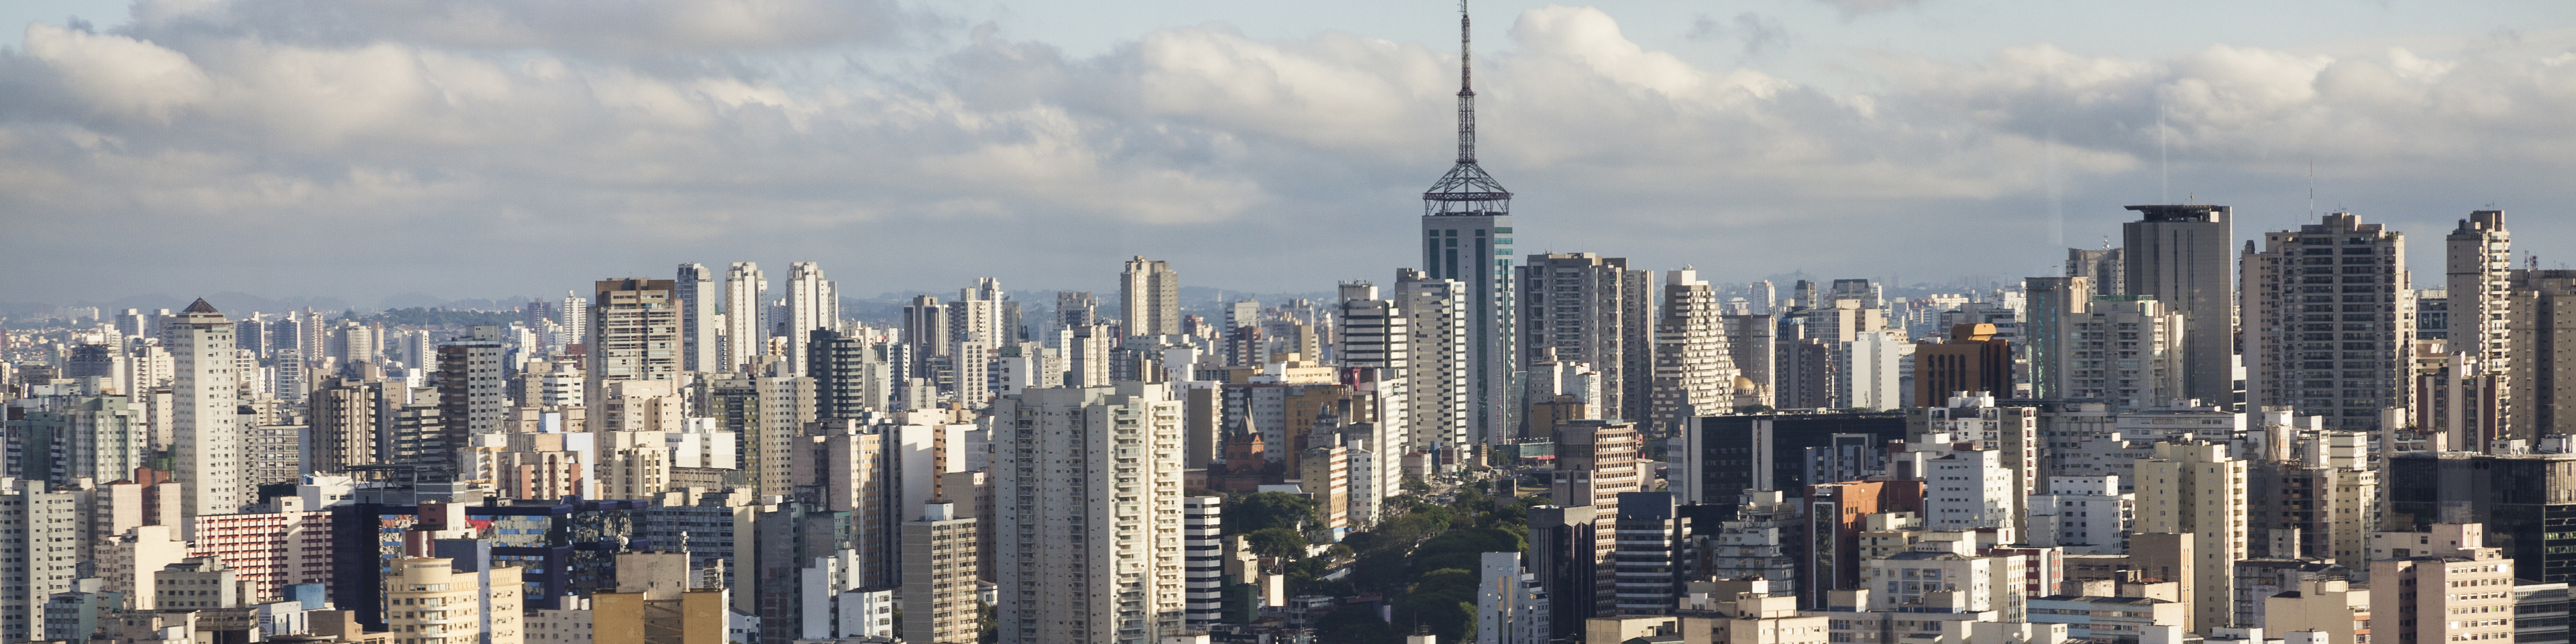 Cityscape view of São Paulo Brazil